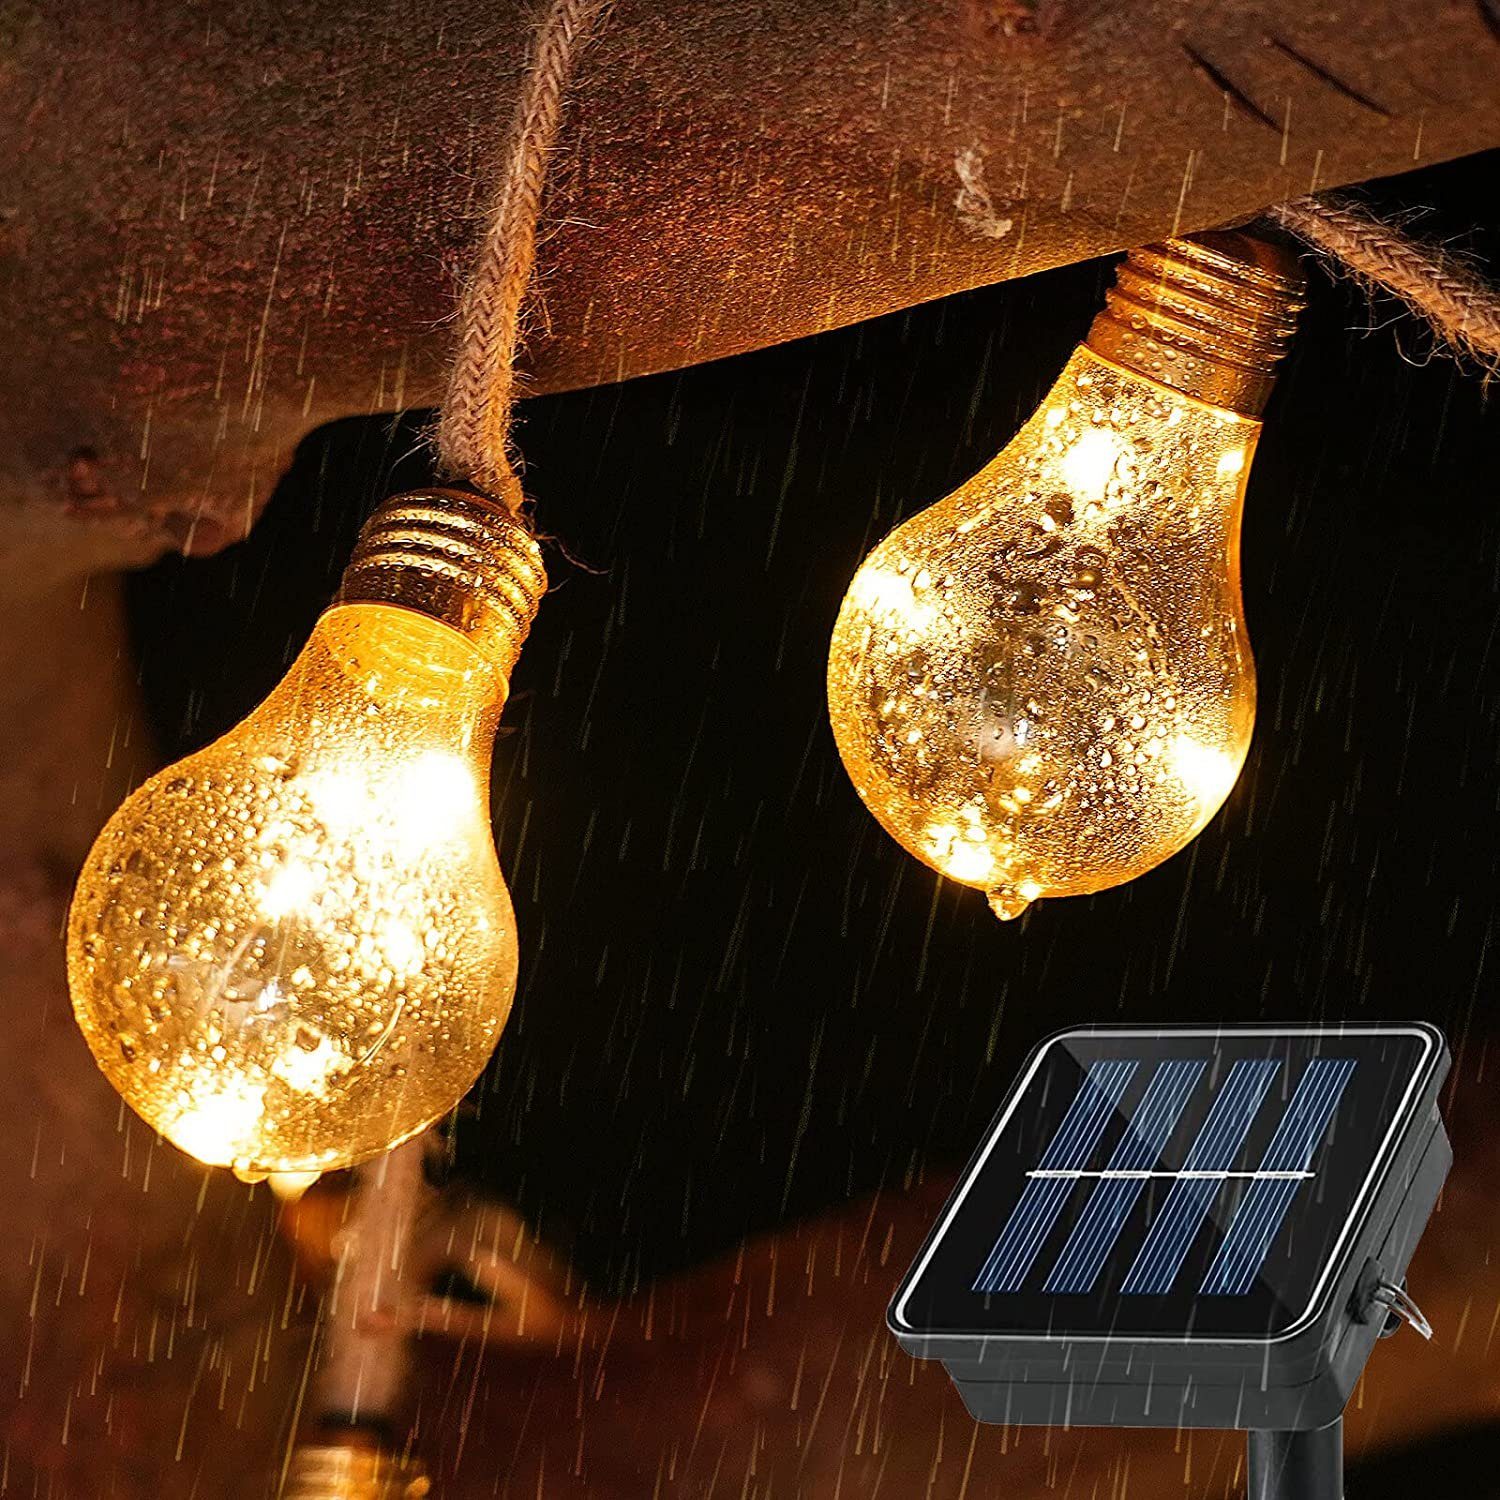 Aoucheni LED Gartenleuchte LED Solar Lichterkette Glühbirnen Außen 8m, Tageslichtweiß, Mit USB-/Solar-Lademethode, 8 Beleuchtungsmodi, 4 Zeiteinstellungen, IP65 wasserdicht